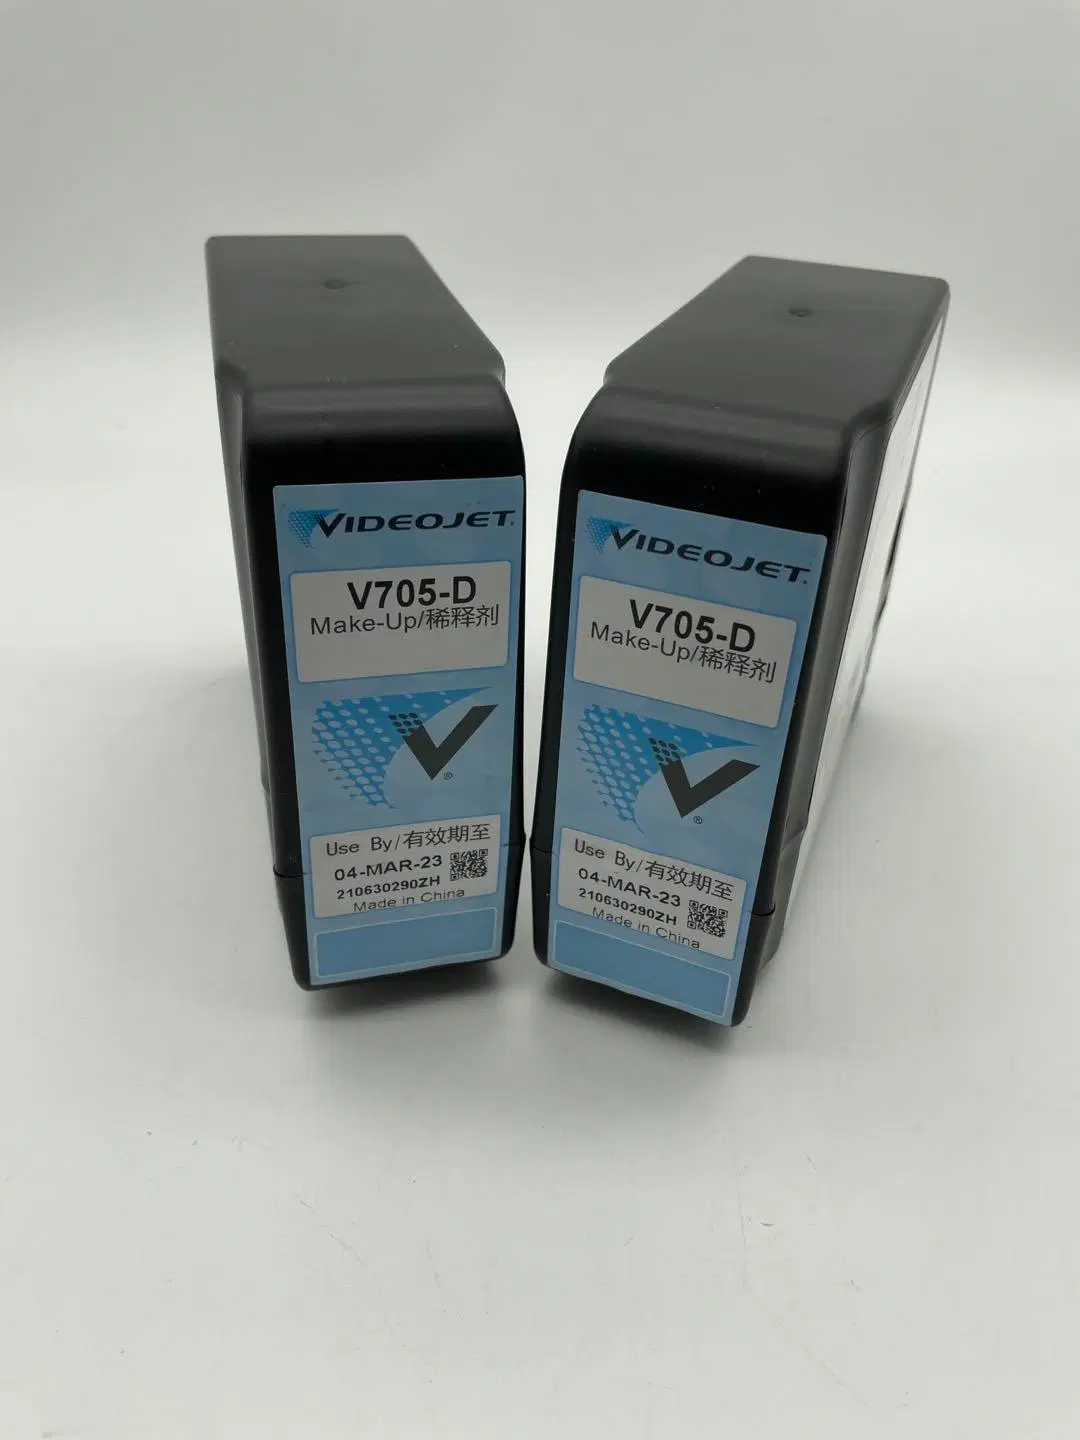 طابعة نفث الحبر الأصلية طراز V705-D التي تعمل بتقنية Videojet Cij Inkjet